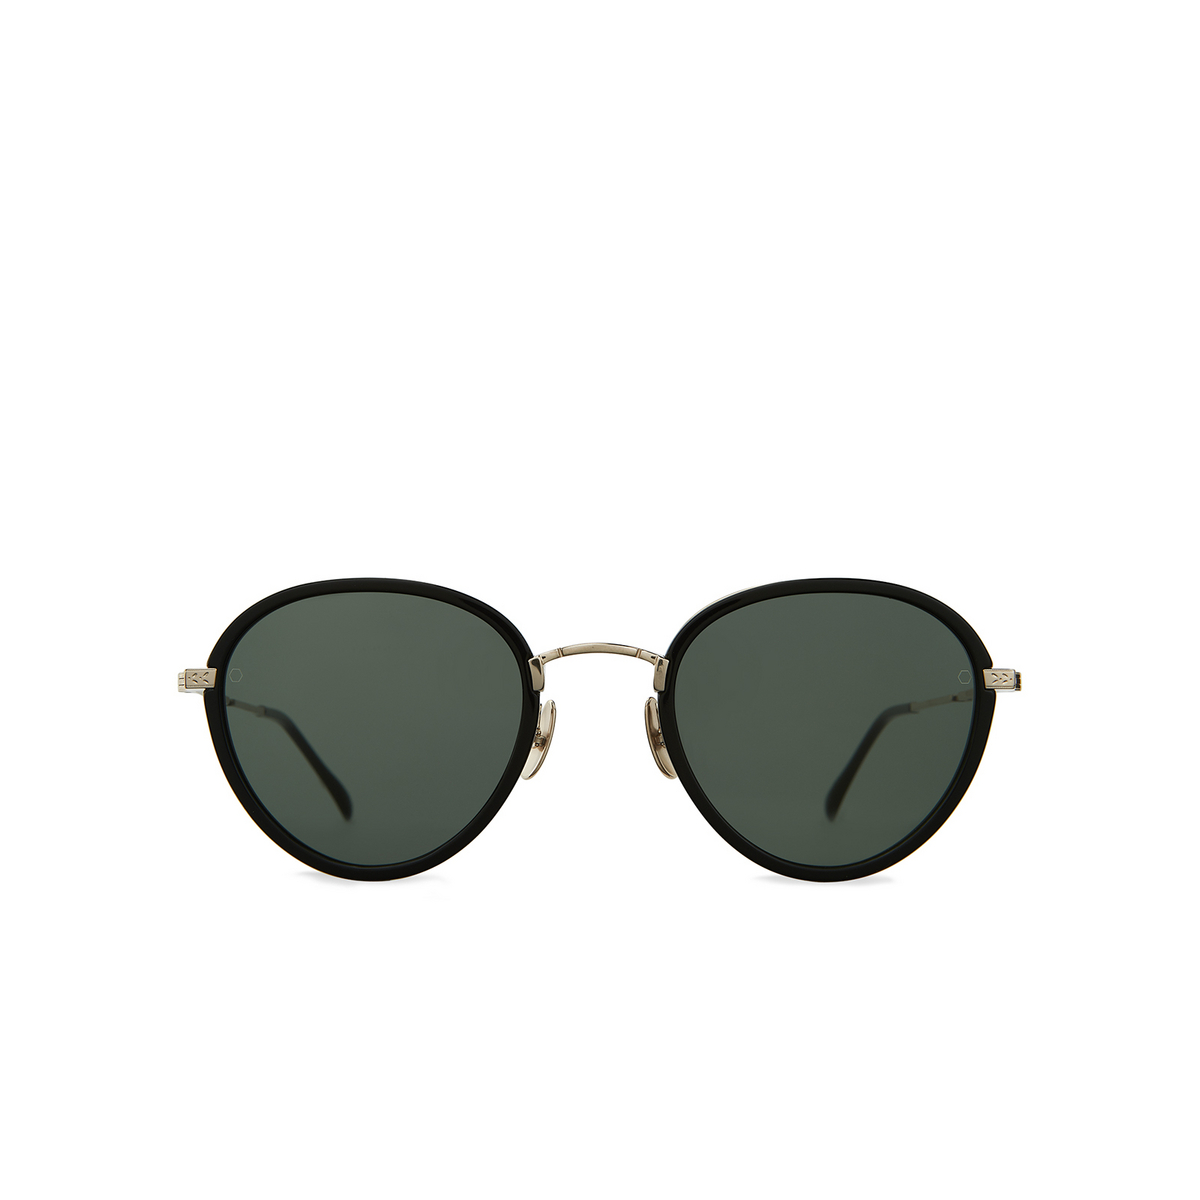 Mr. Leight MONTEREY SL Sunglasses MBK/G15+ASH/BLUL Matte Black / G15 + Ash / Bluelight - front view